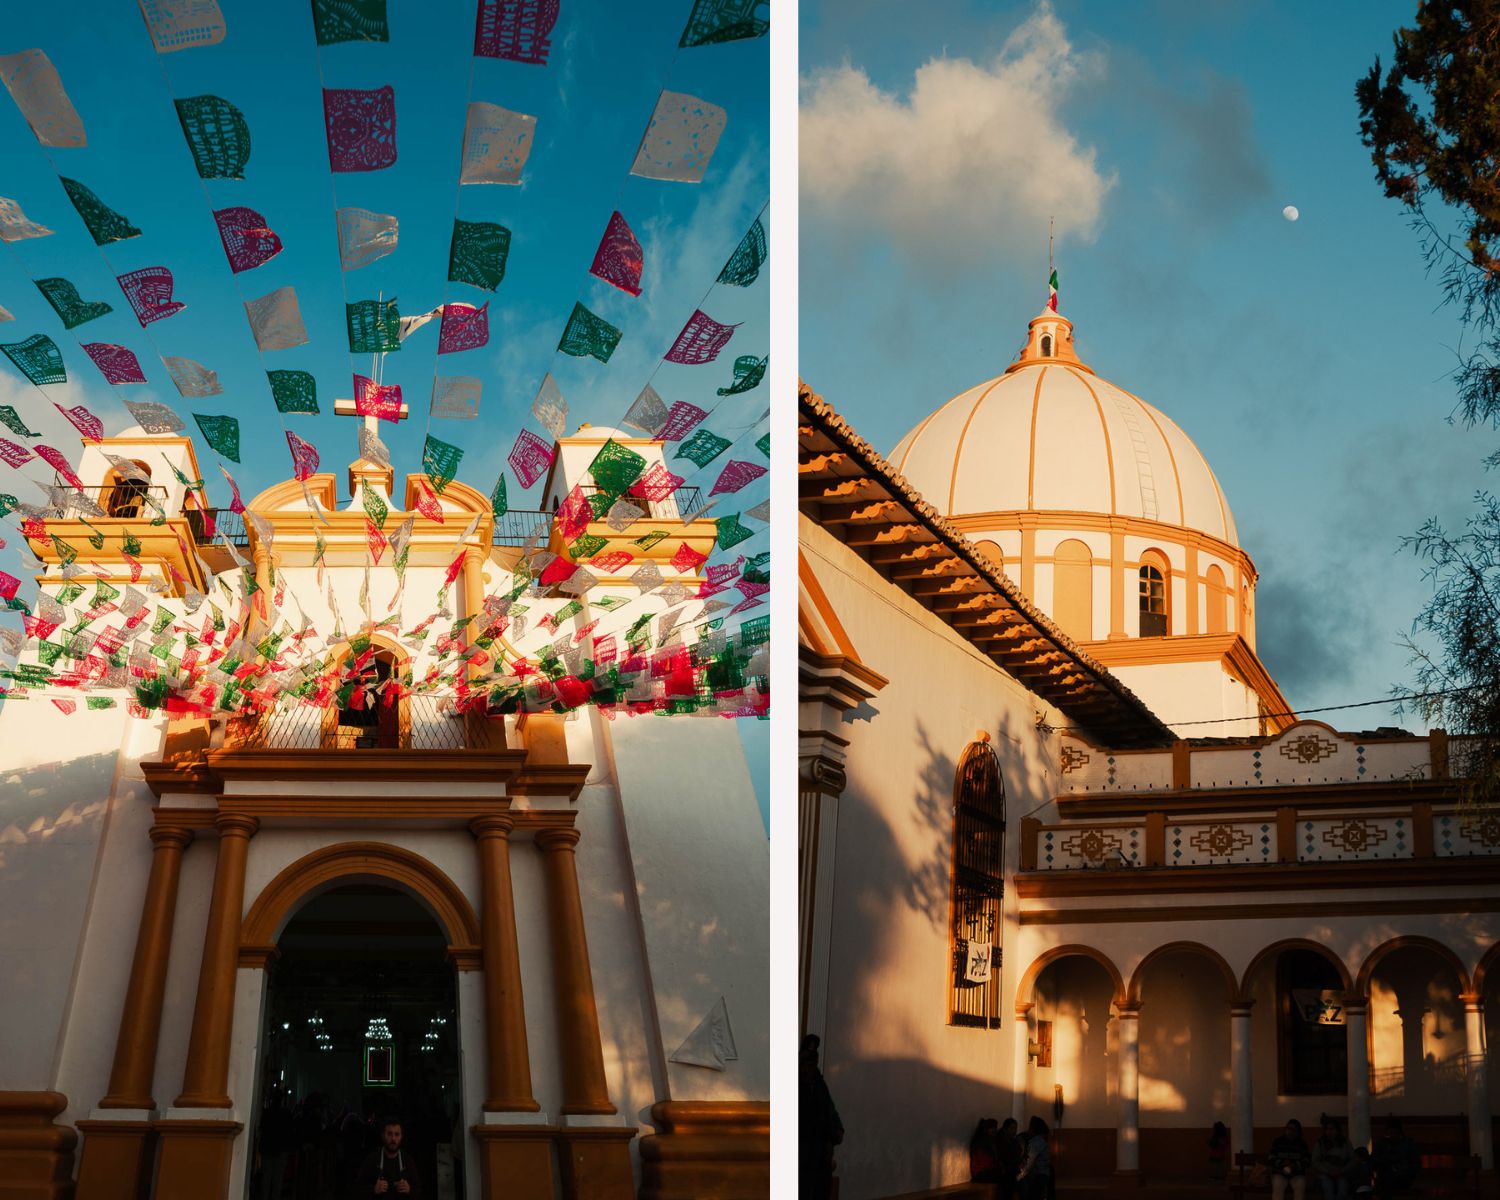 San Cristobal de las Casas, the unexpected experience of the Chiapas itinerary